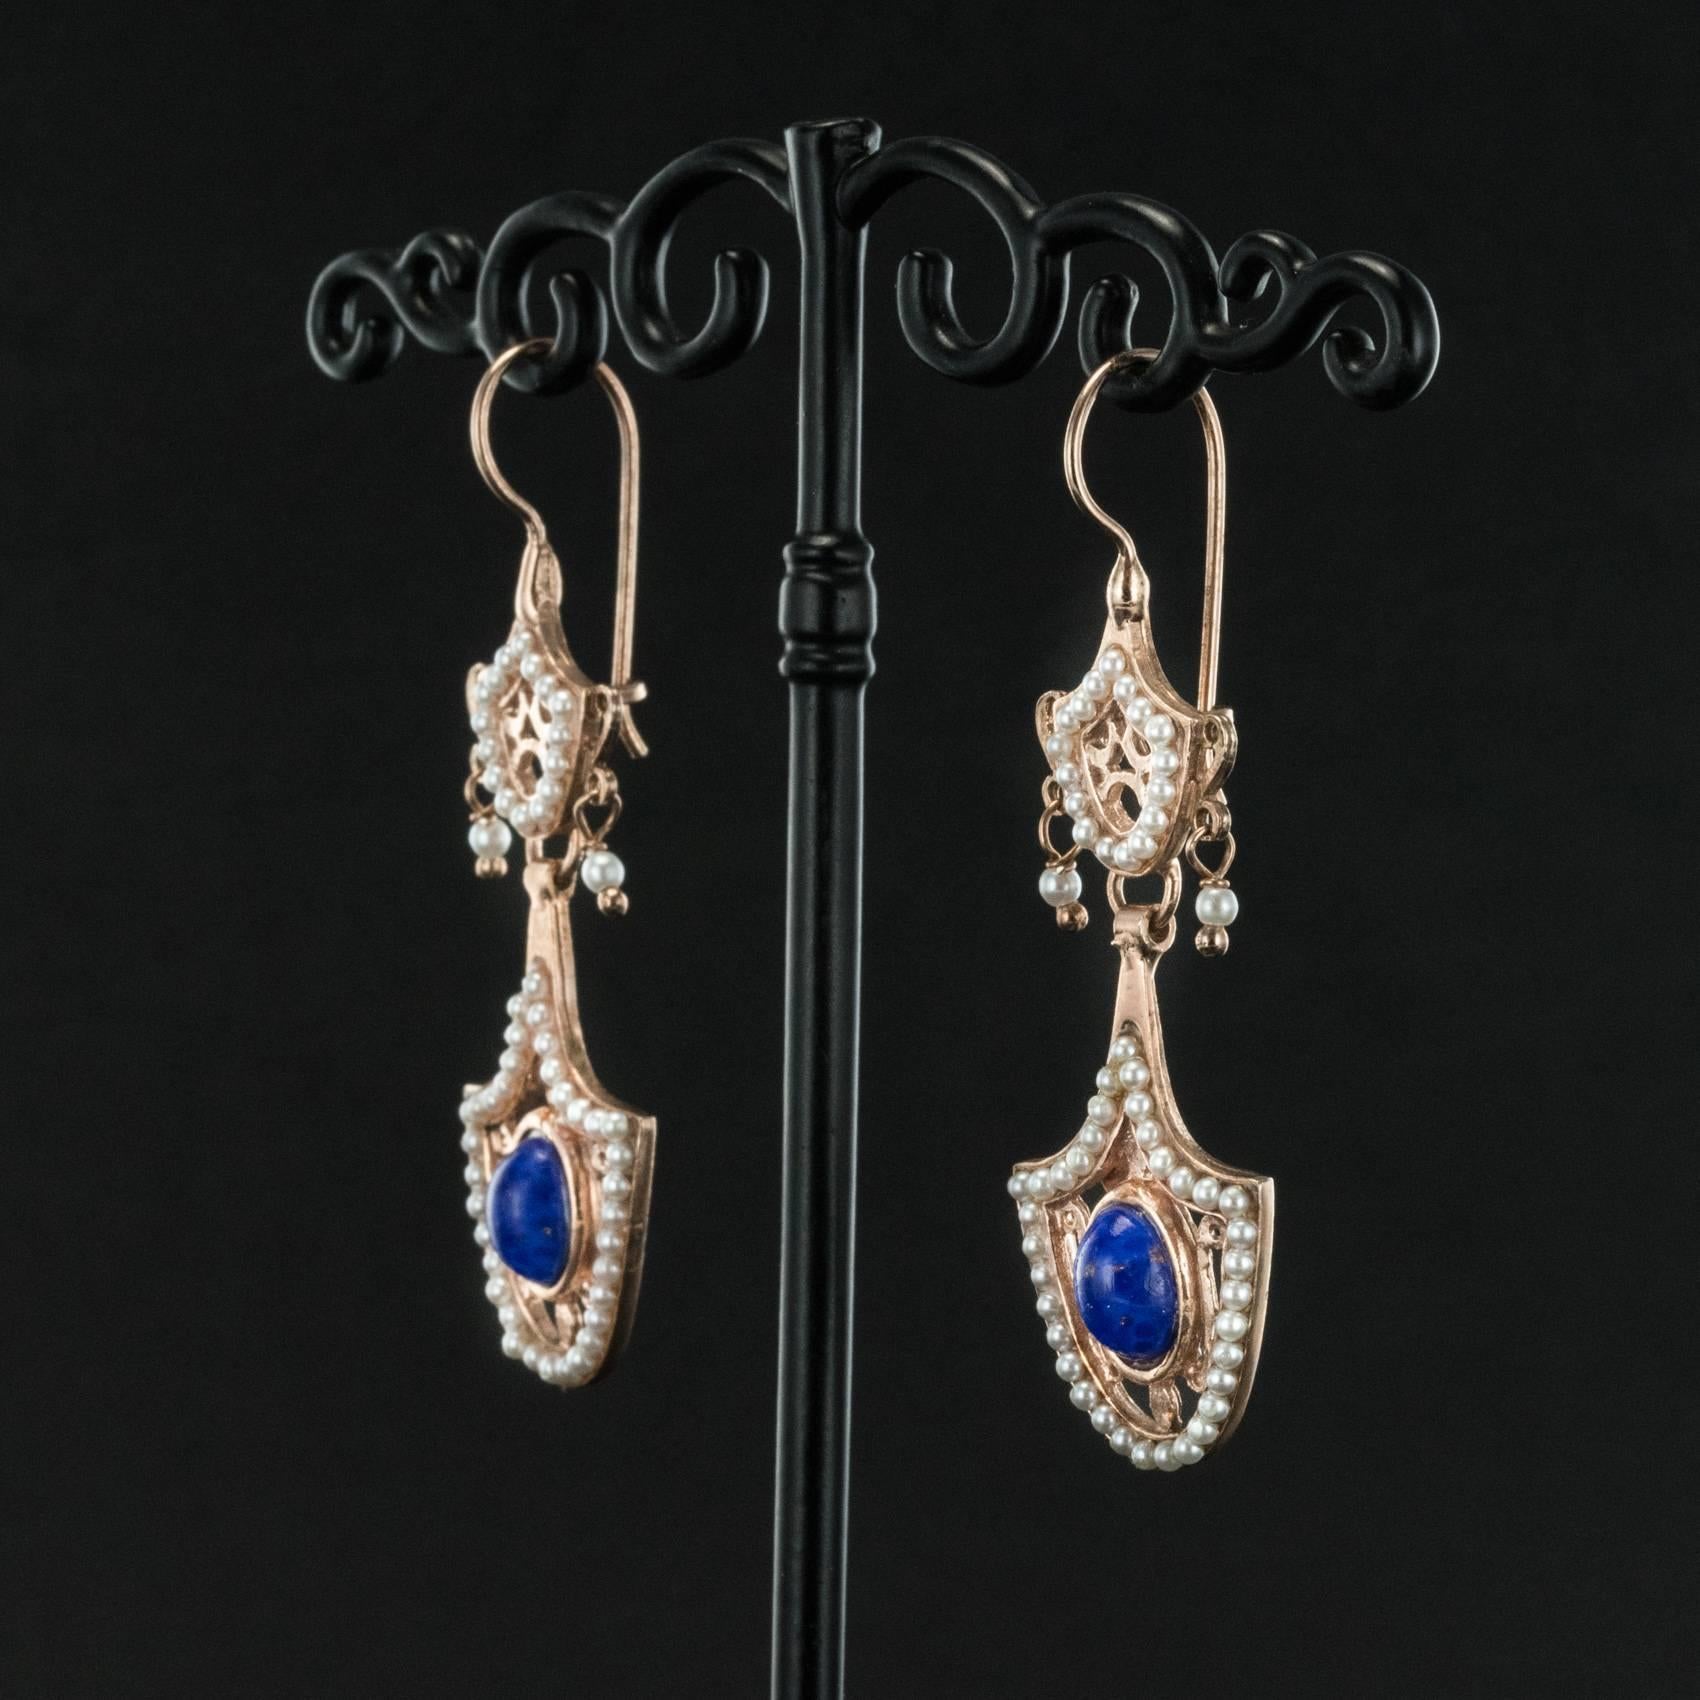 antique style earrings dangle